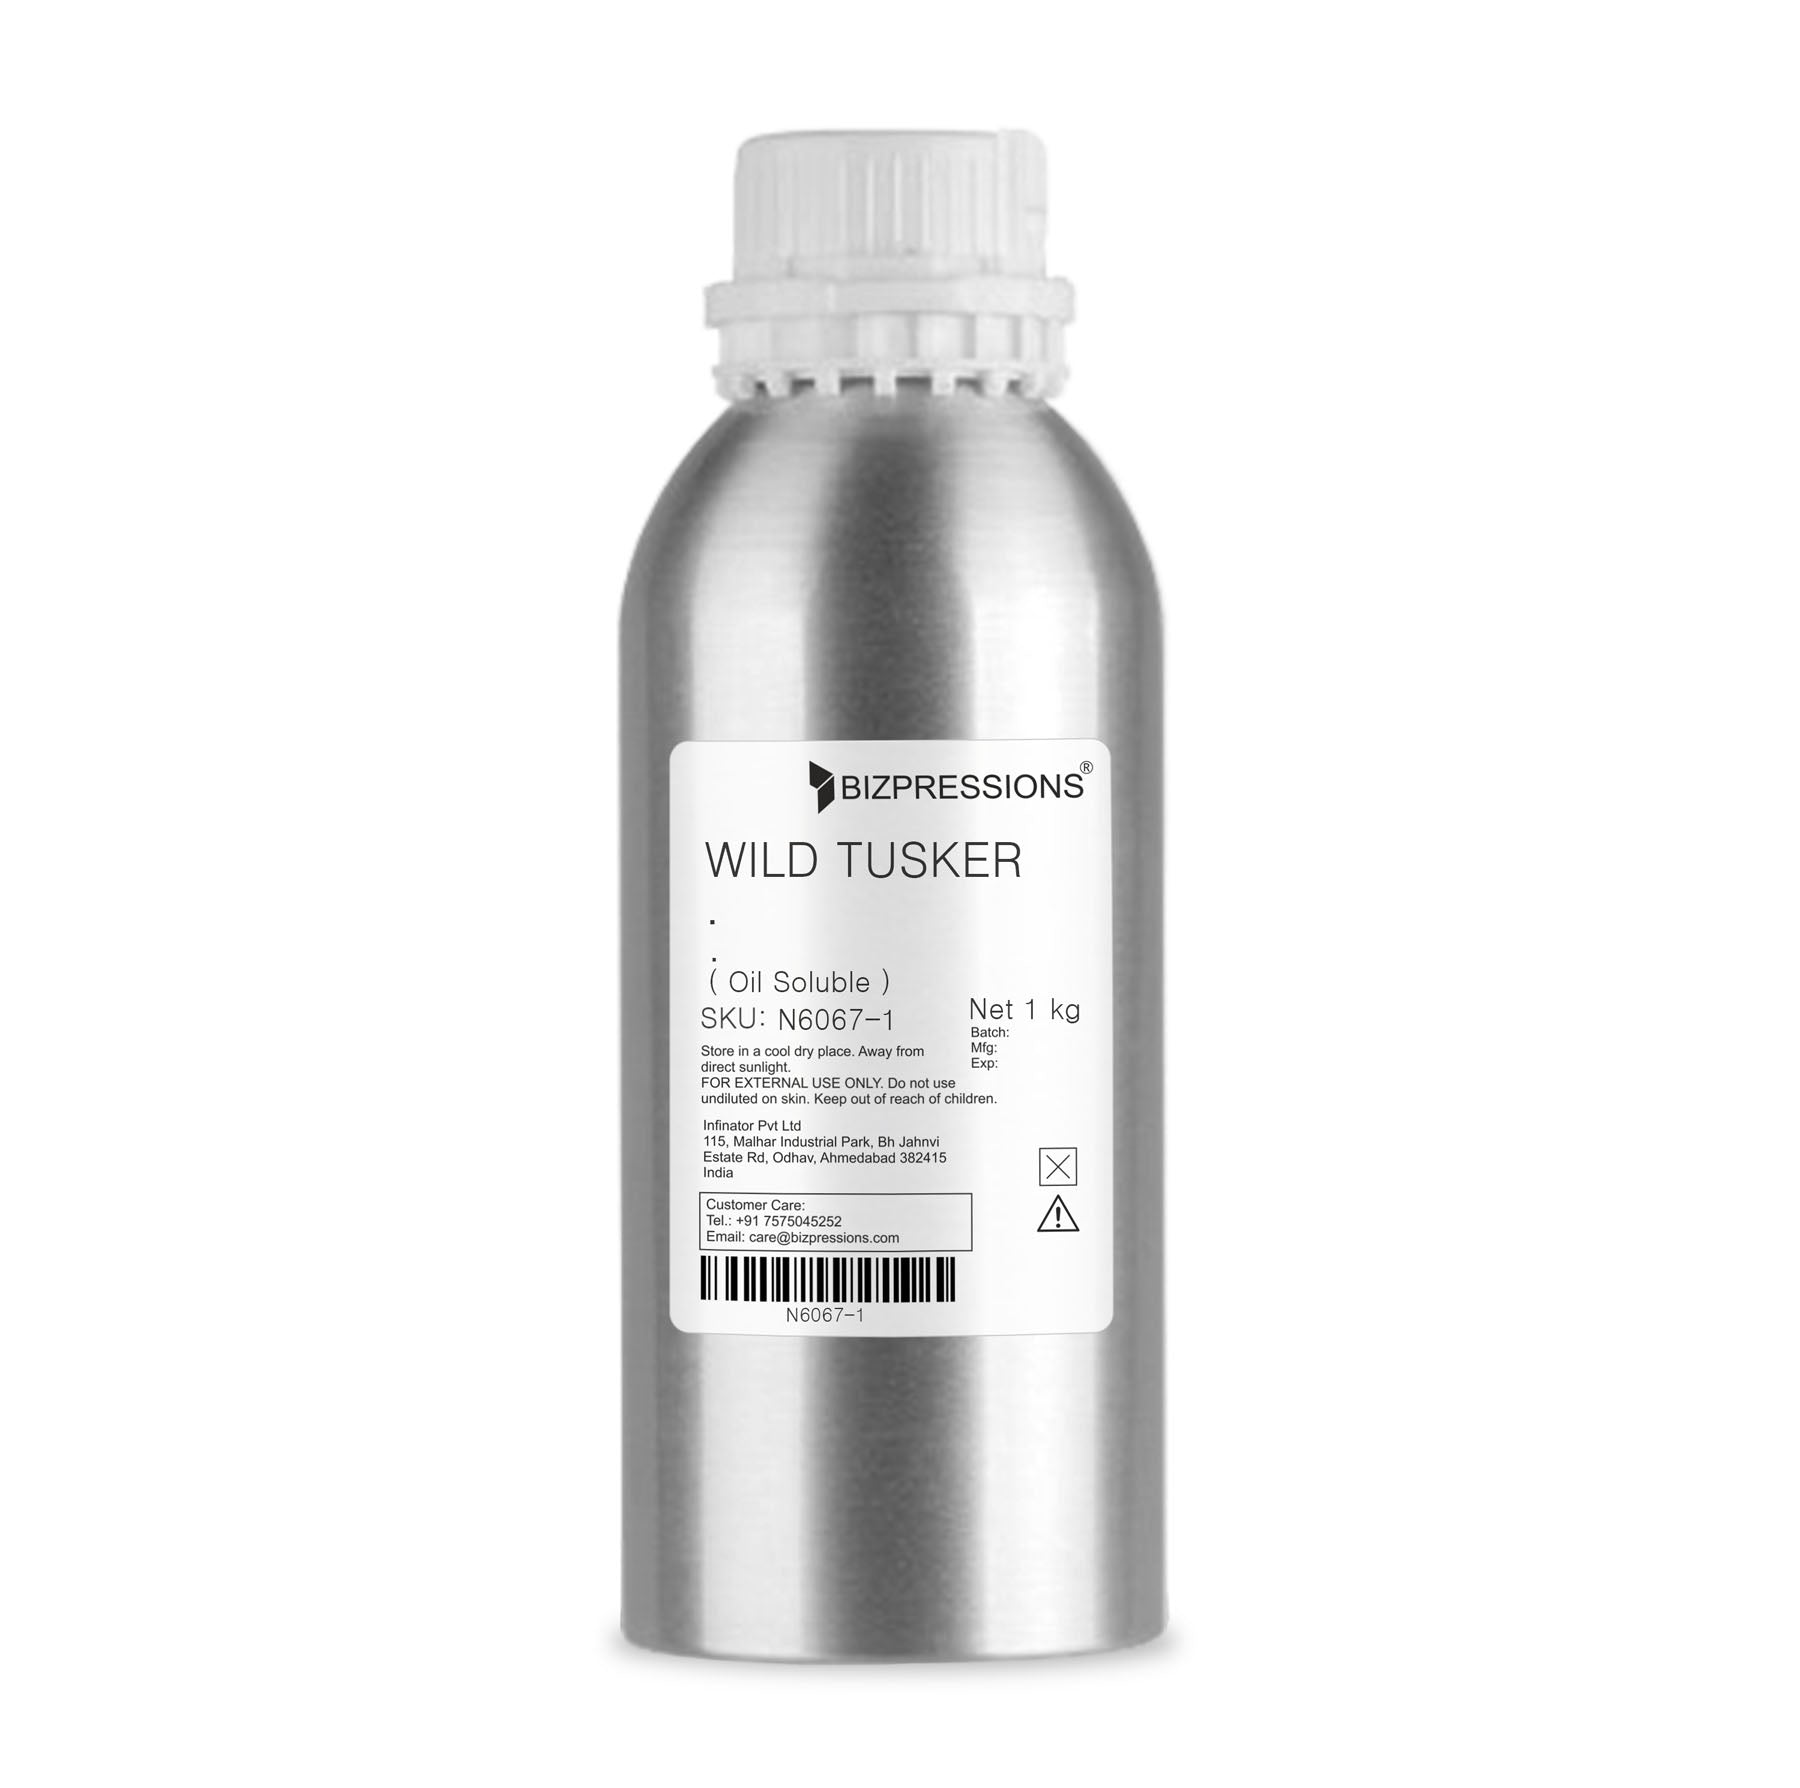 WILD TUSKER - Fragrance ( Oil Soluble ) - 1 kg